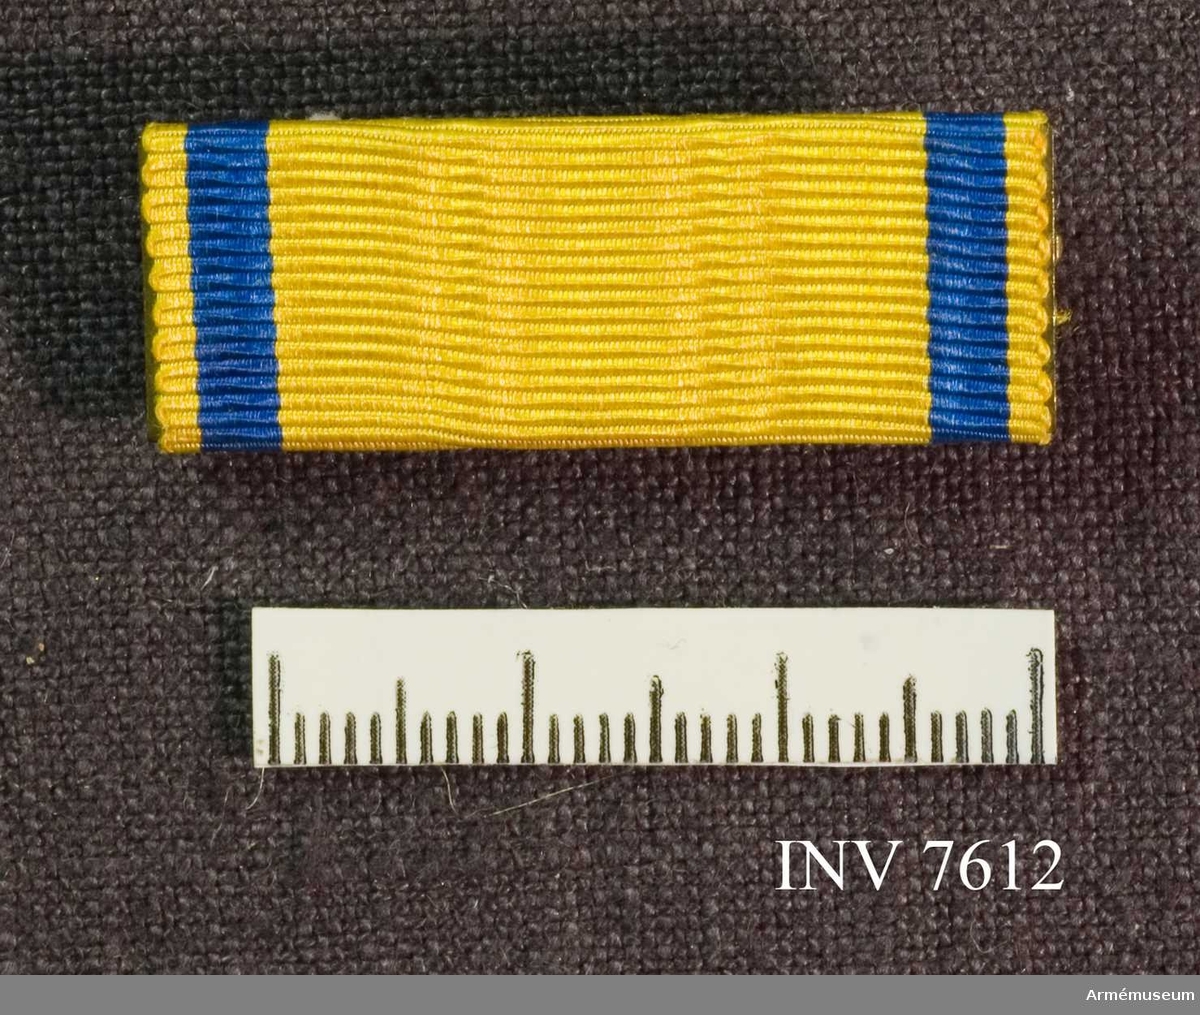 Metallspänne överklätt med samma band vad gäller färg och bredd som svärdstecknets band.

Förvaras tillsammans med AM 7611 i röd ask med gulddekor.